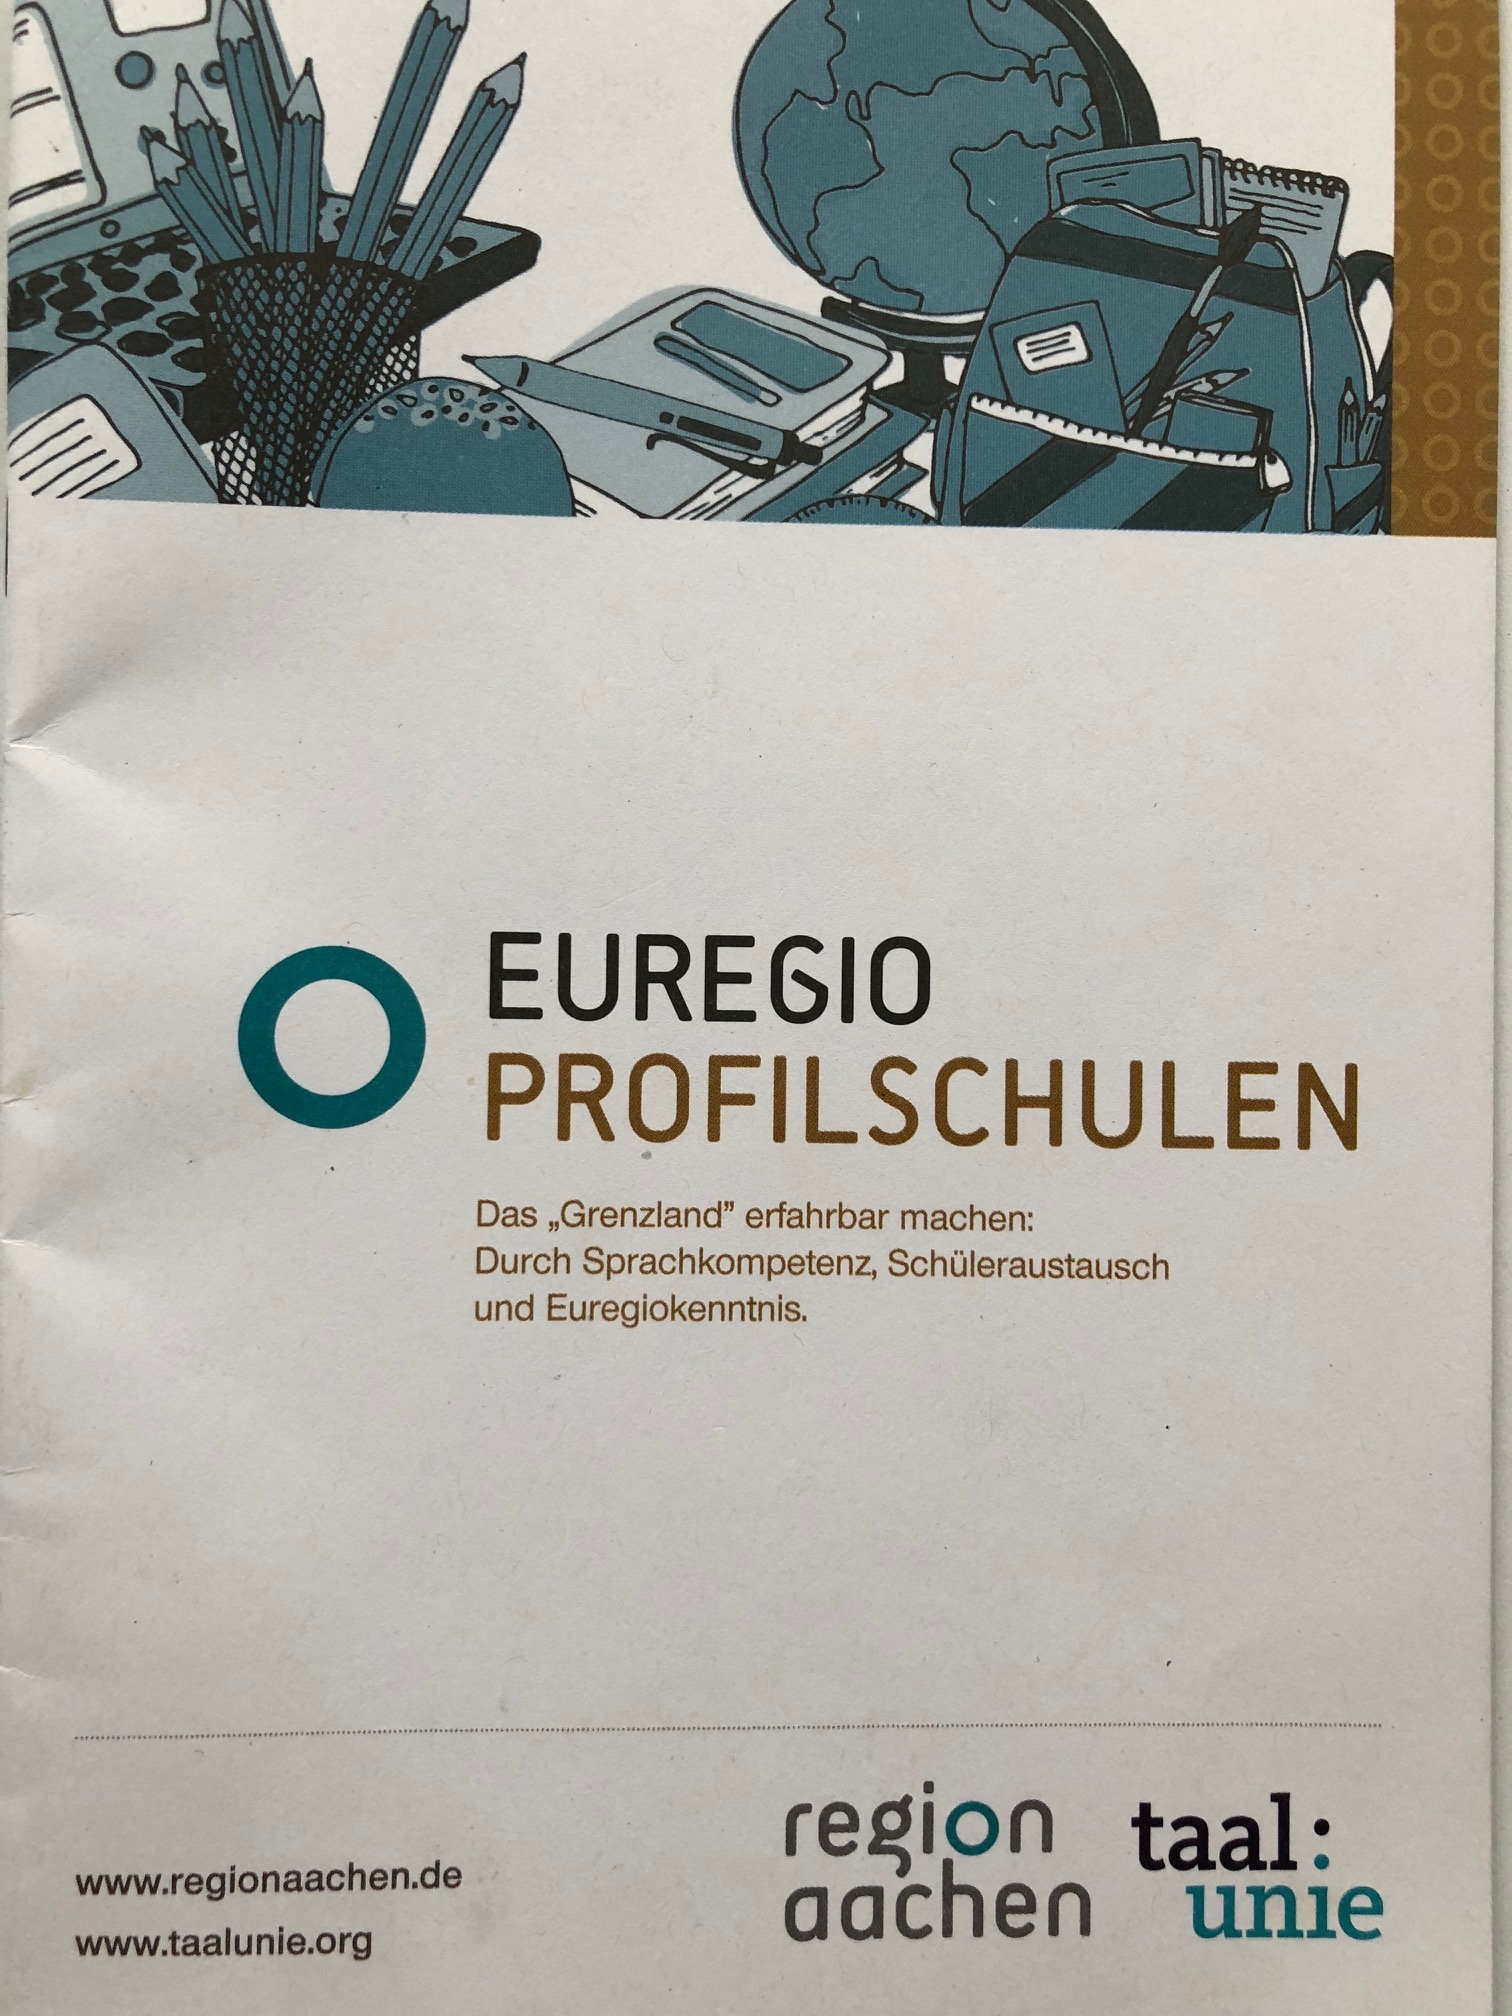 Euregio Profilschulen (c) F. Hülden